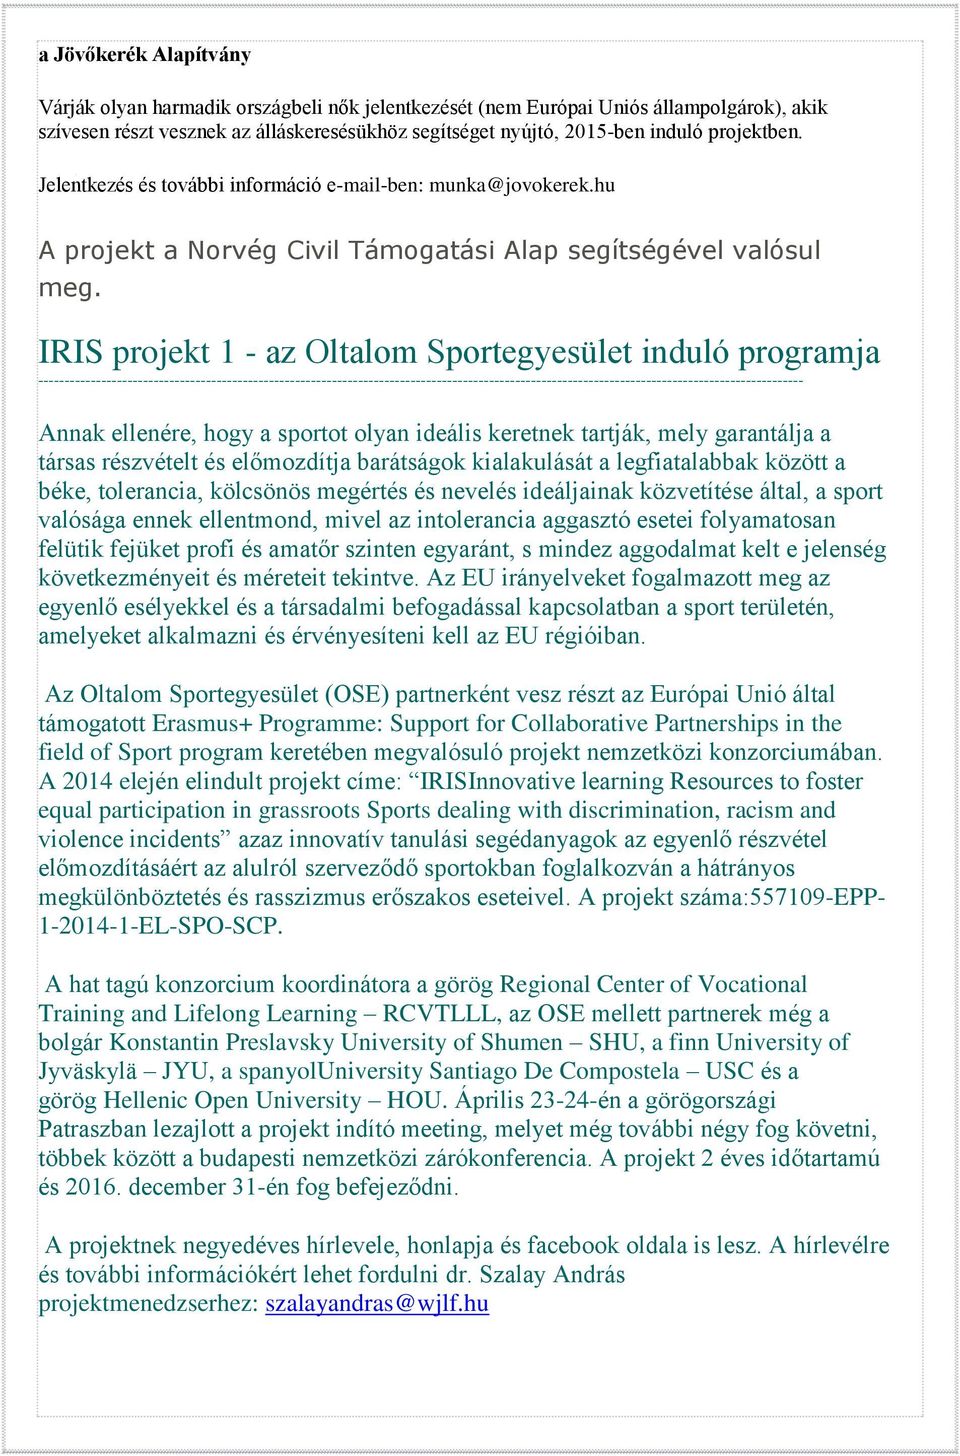 IRIS projekt 1 - az Oltalom Sportegyesület induló programja